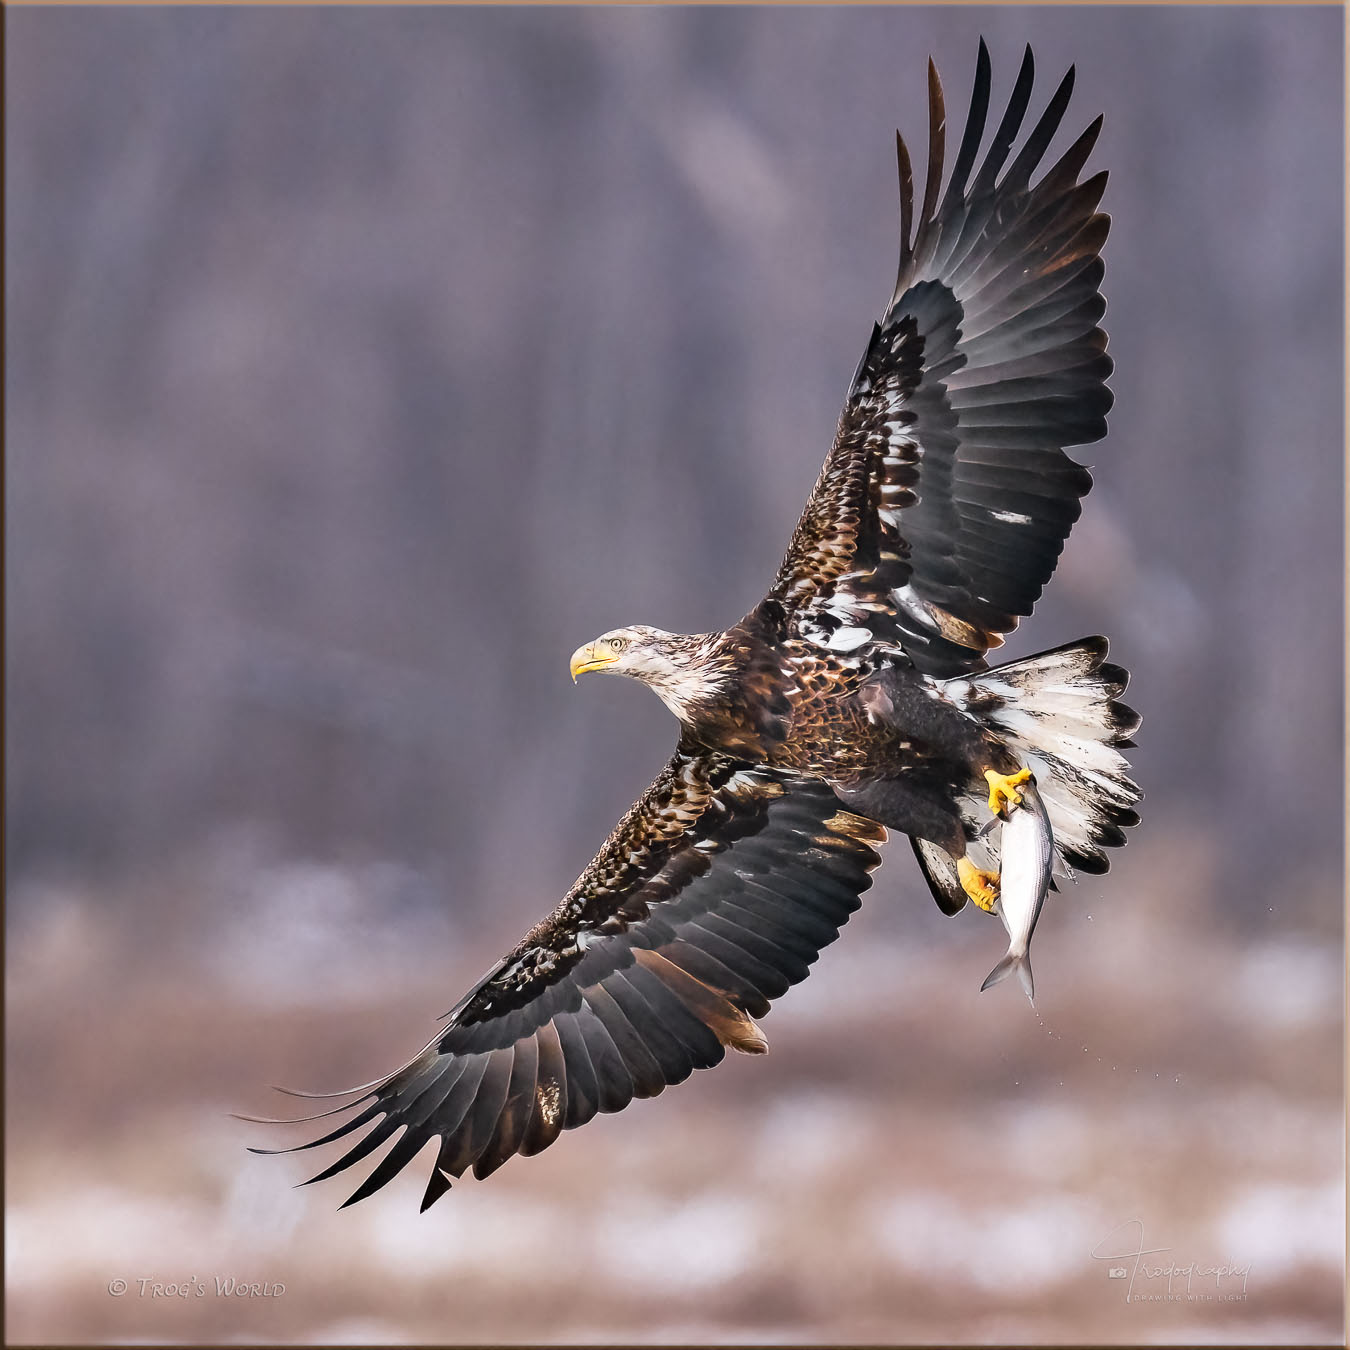 Juvenile Bald Eagle with a fish